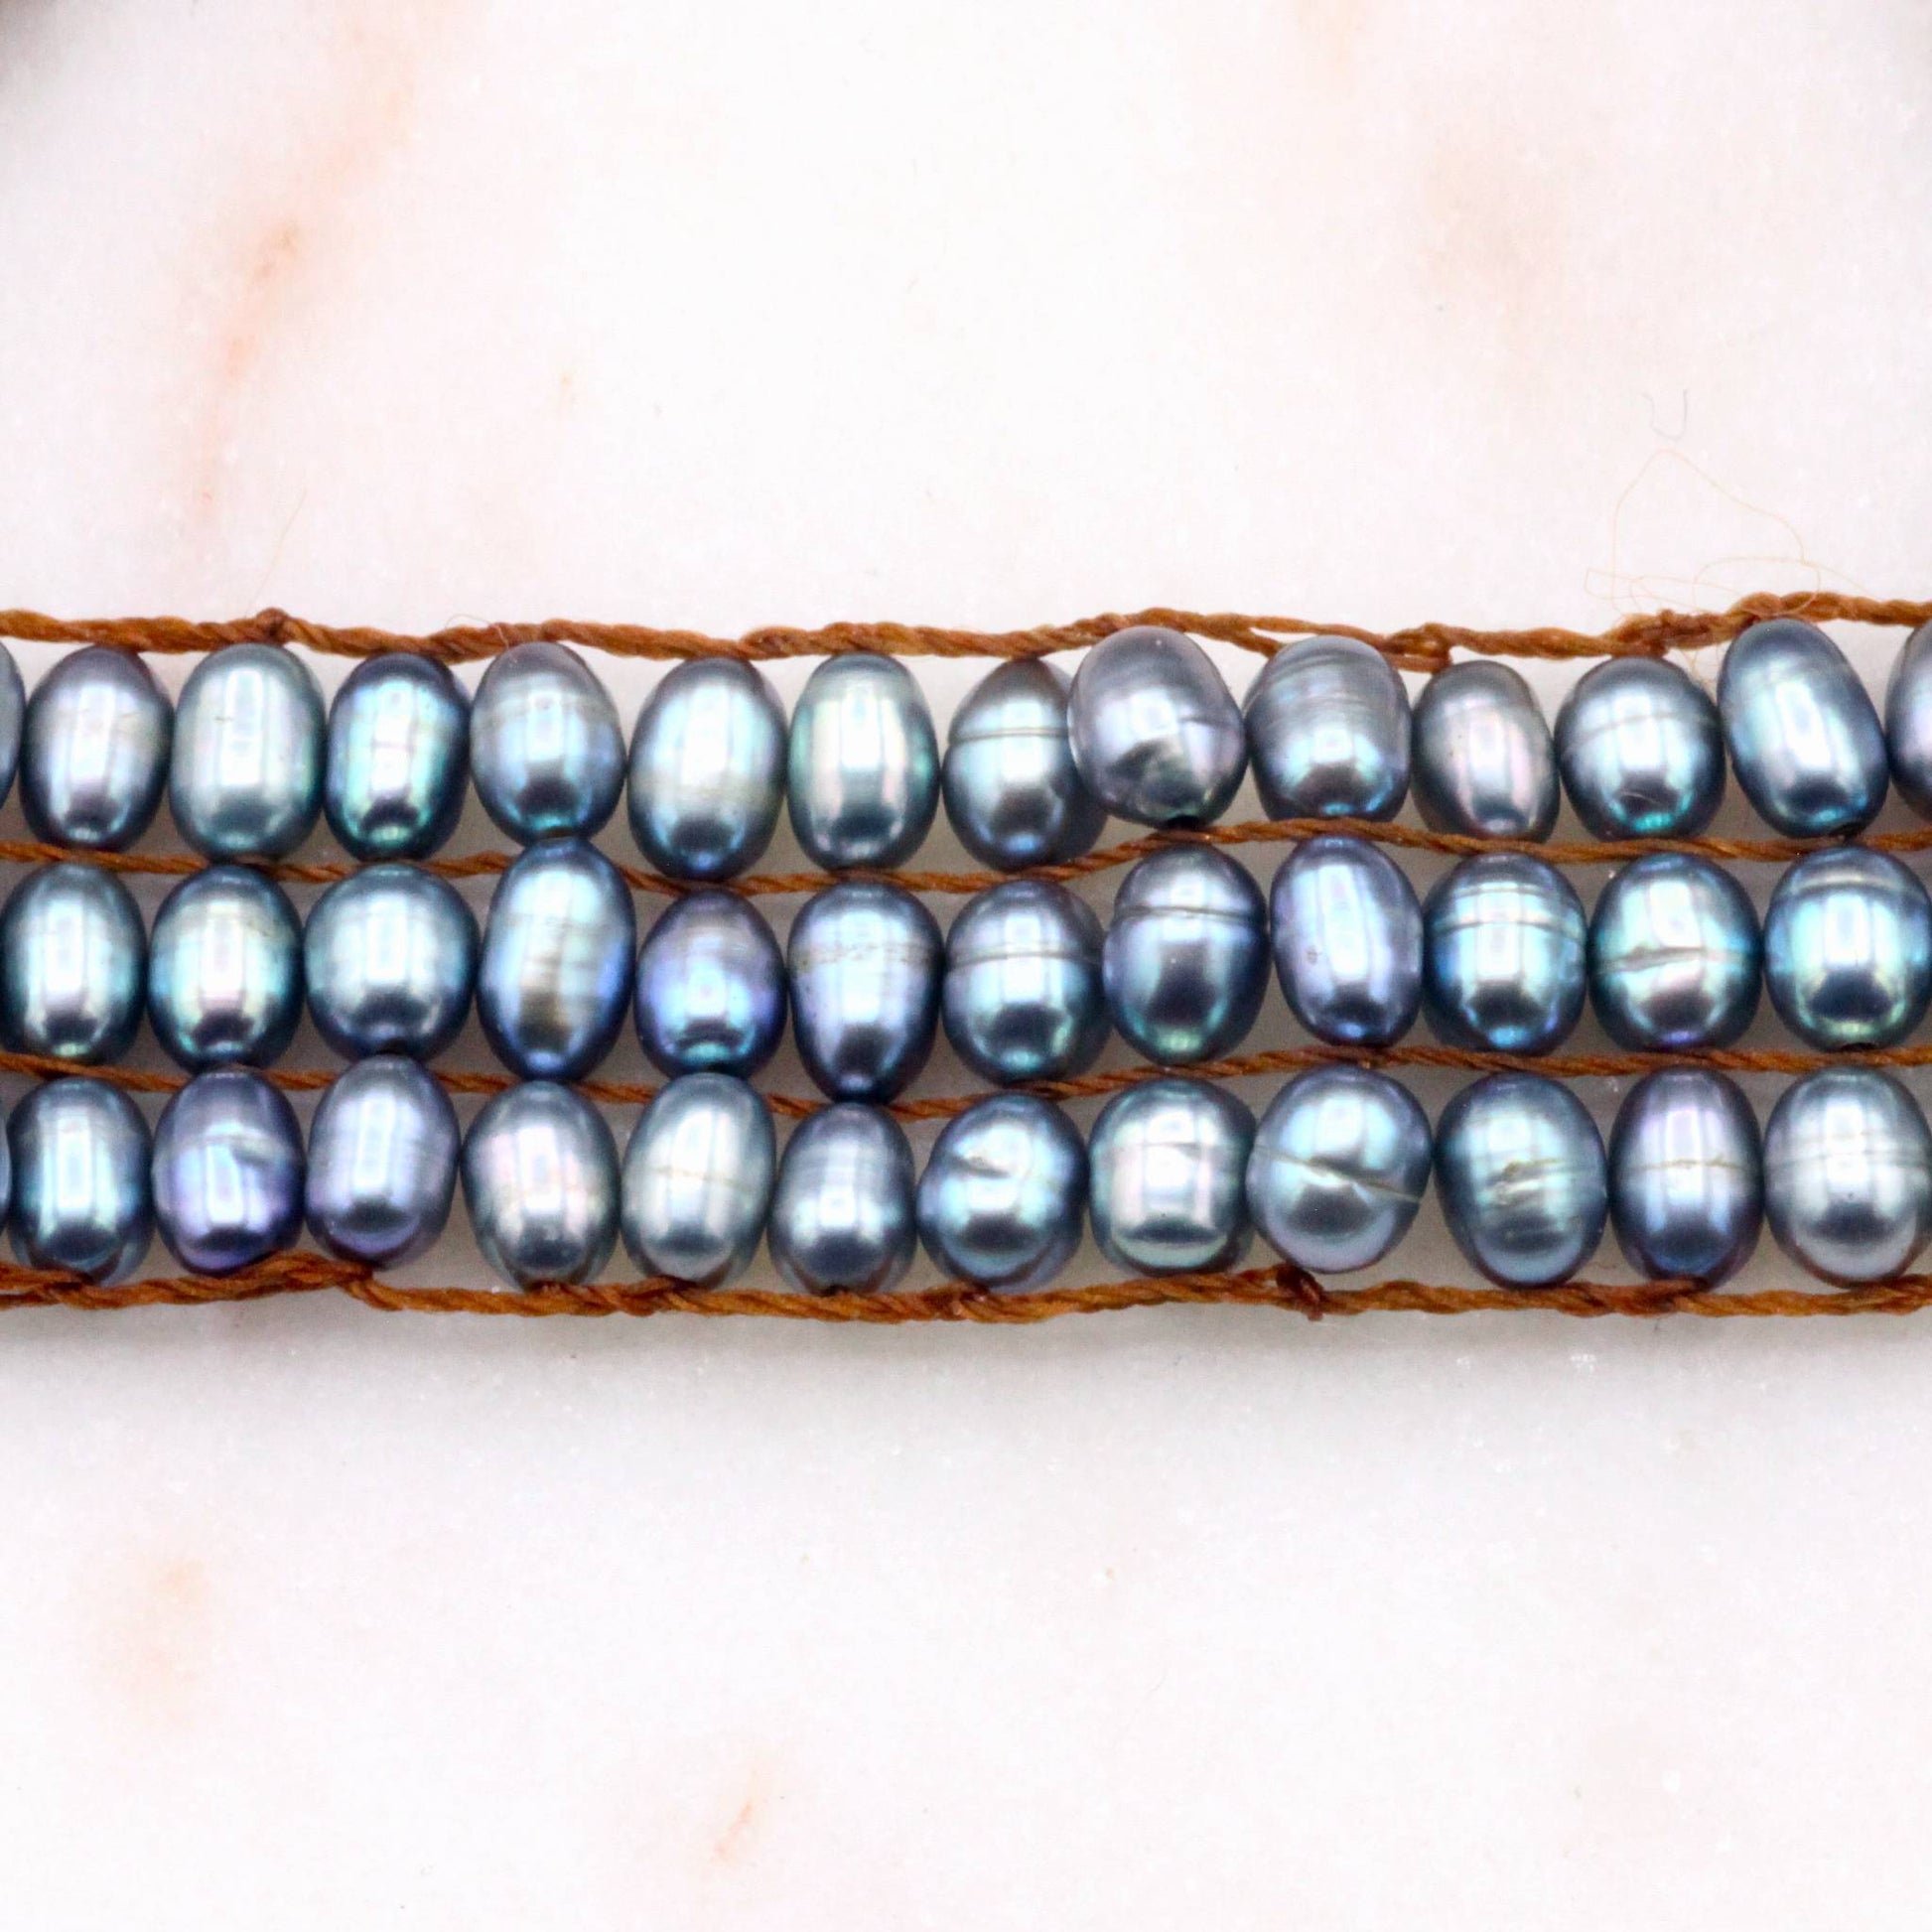 Lena Skadegard Jewelry | Grey Pearl Crochet Tassel Bracelet | Firecracker